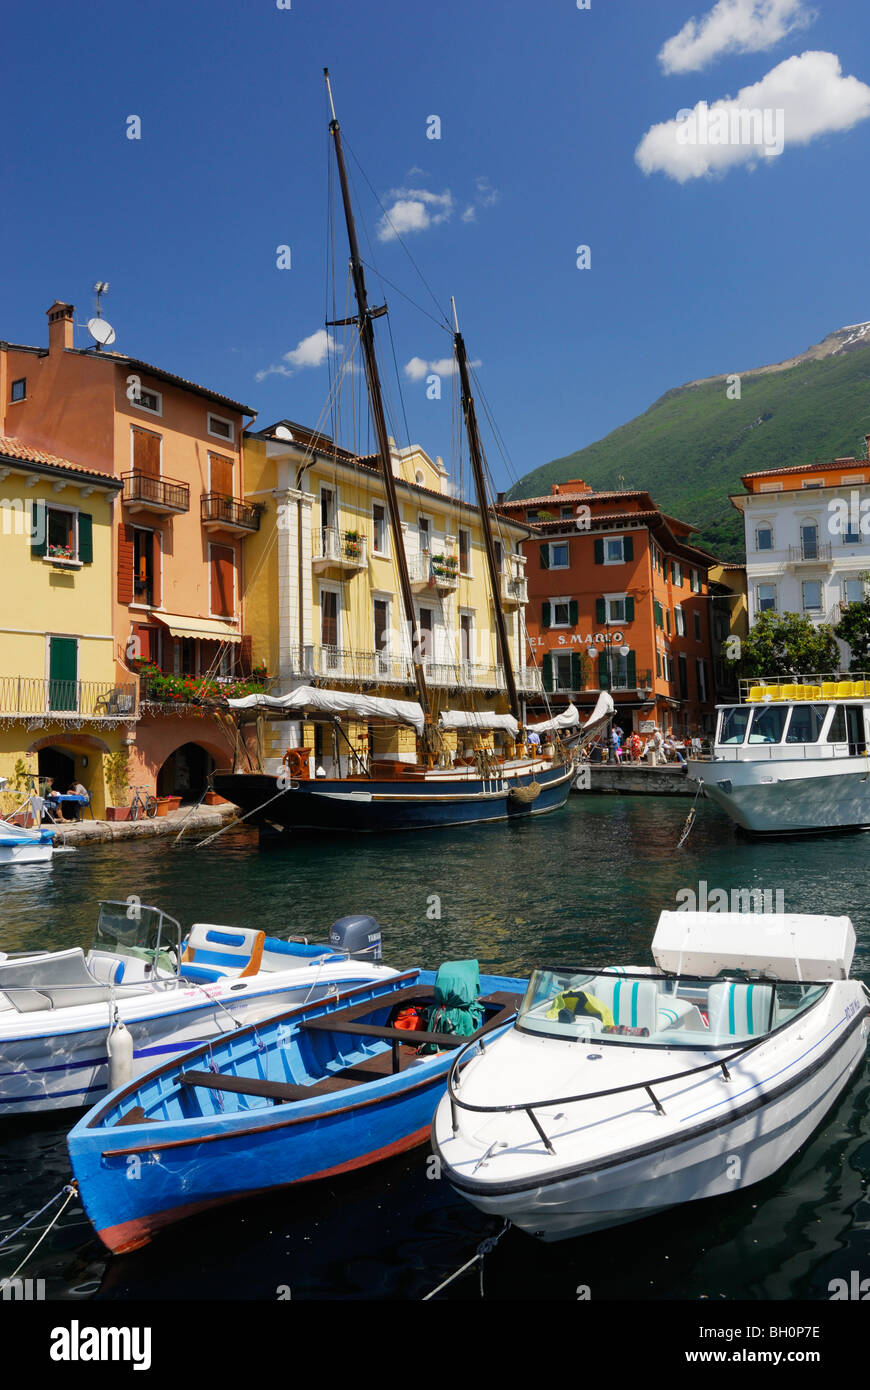 Marina with boats, Malcesine, Veneto, Italy Stock Photo